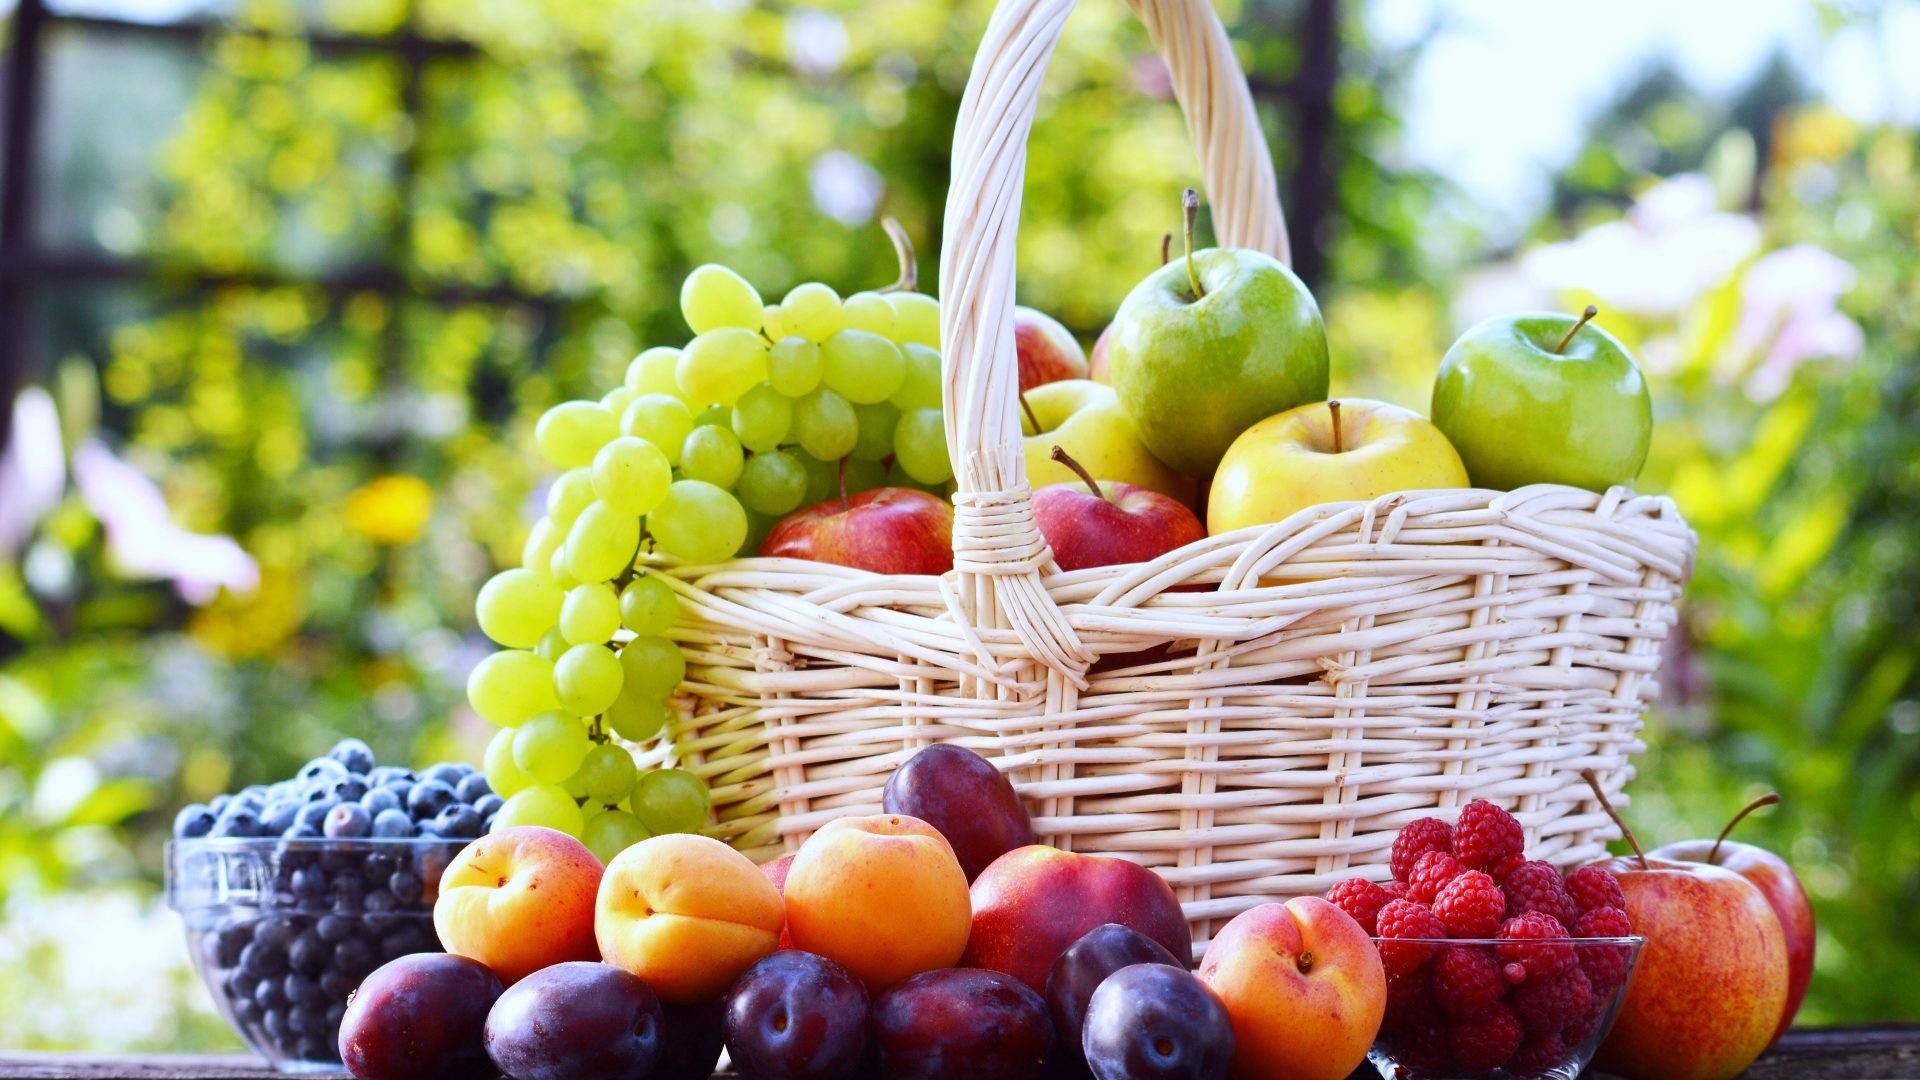 果物写真壁紙,自然食品,フルーツ,地元の食べ物,ヨーロッパの梅,ピクニックバスケット